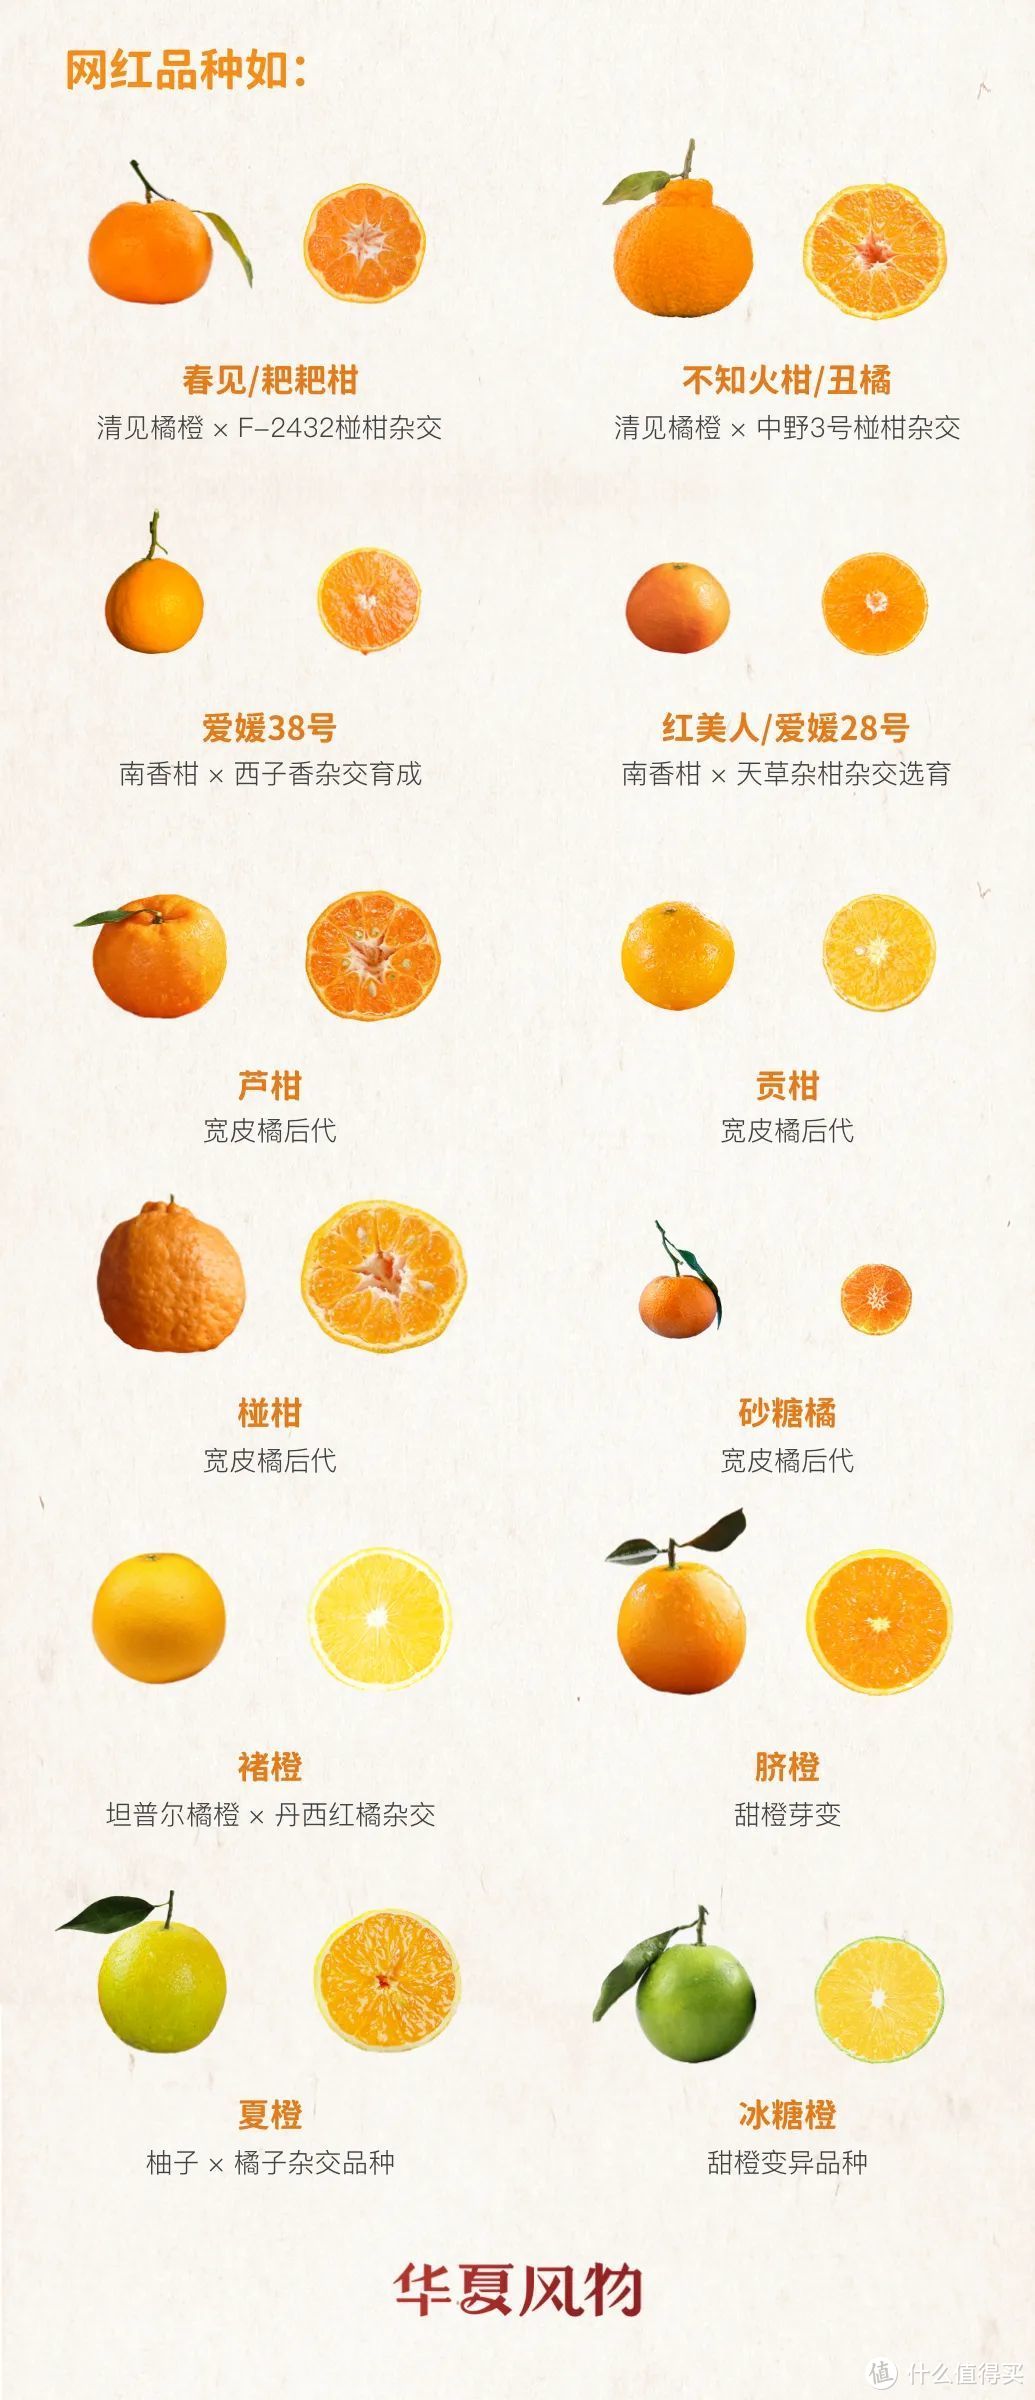 柑橘家族谱系草图©华夏风物